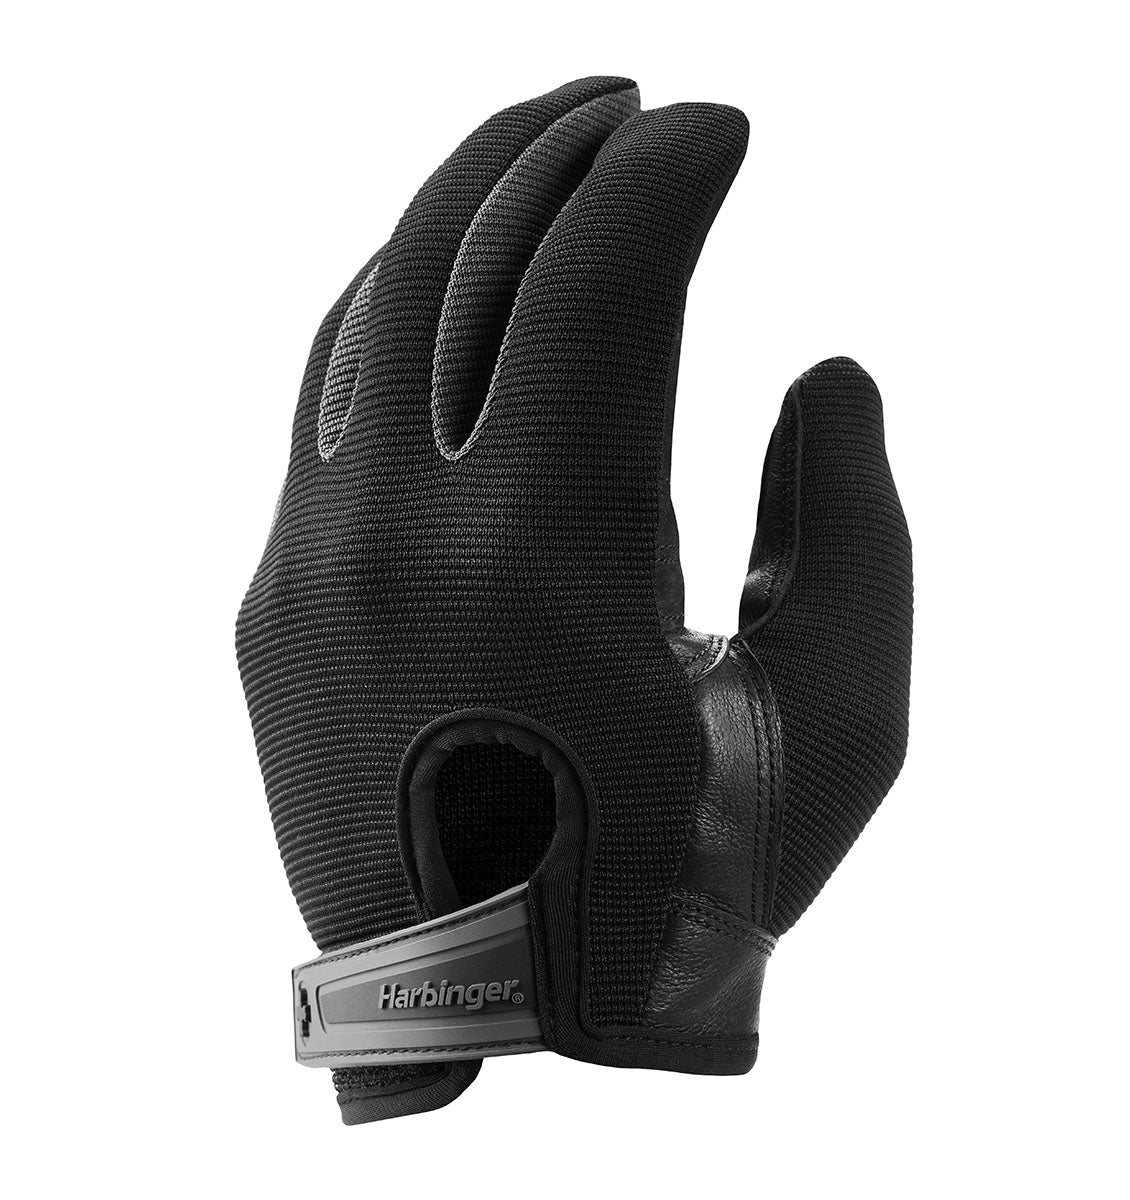 Harbinger Power Protect Gloves - Men's - Black - 3